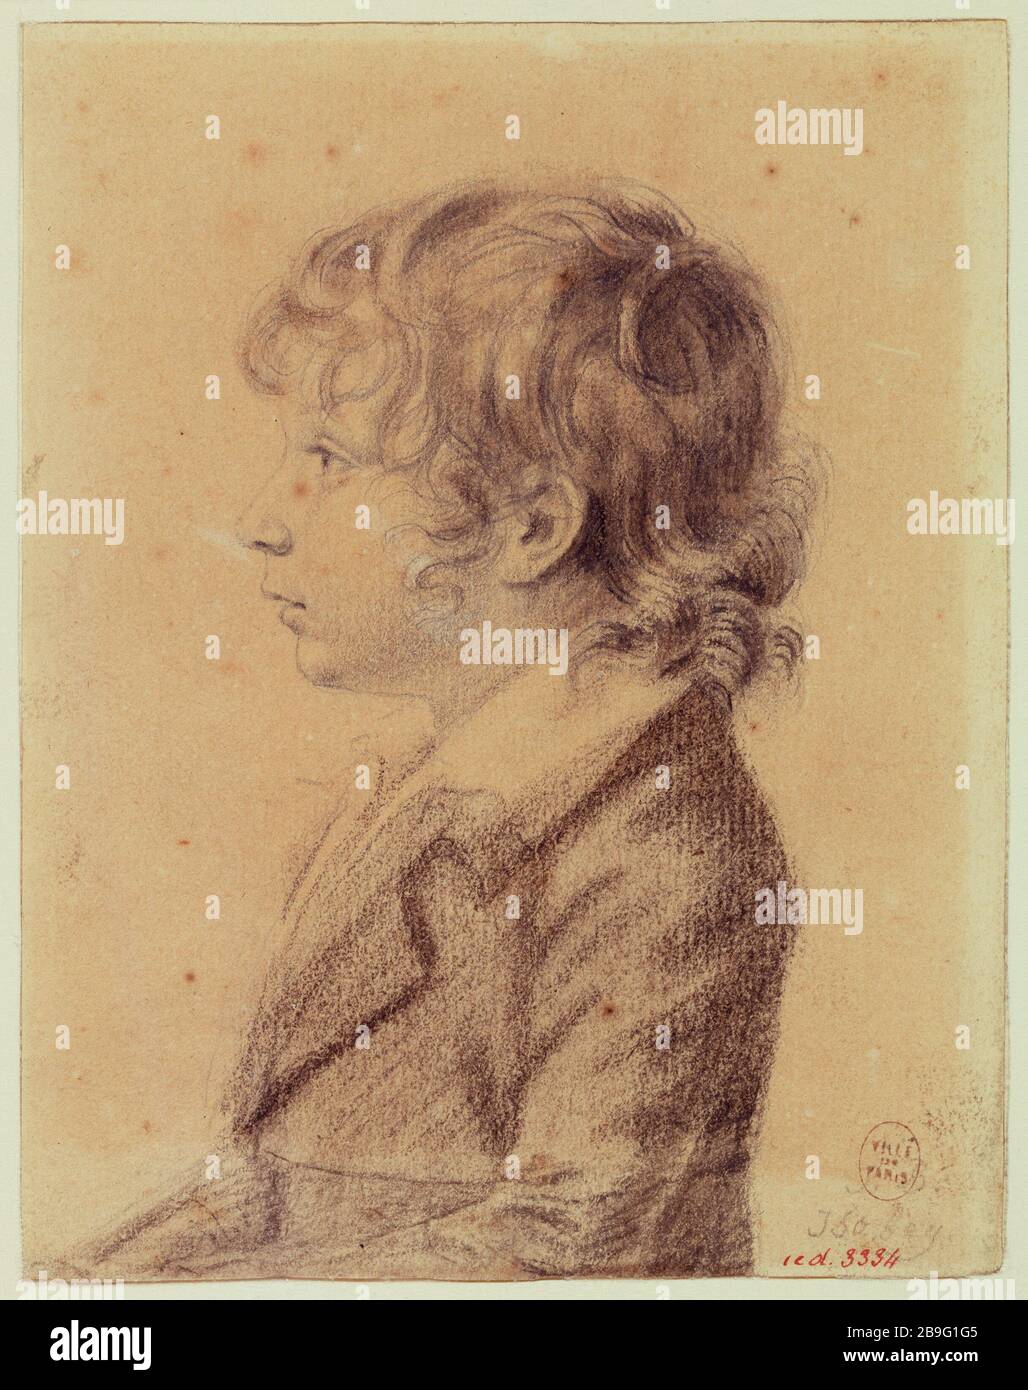 Ritratto del bambino. Jean-Baptiste Isabey (1767-1855). Ritratto d'enfant. 1767-1855. Crayon et fusain ou craie noire. Parigi, musée Carnavalet. Foto Stock